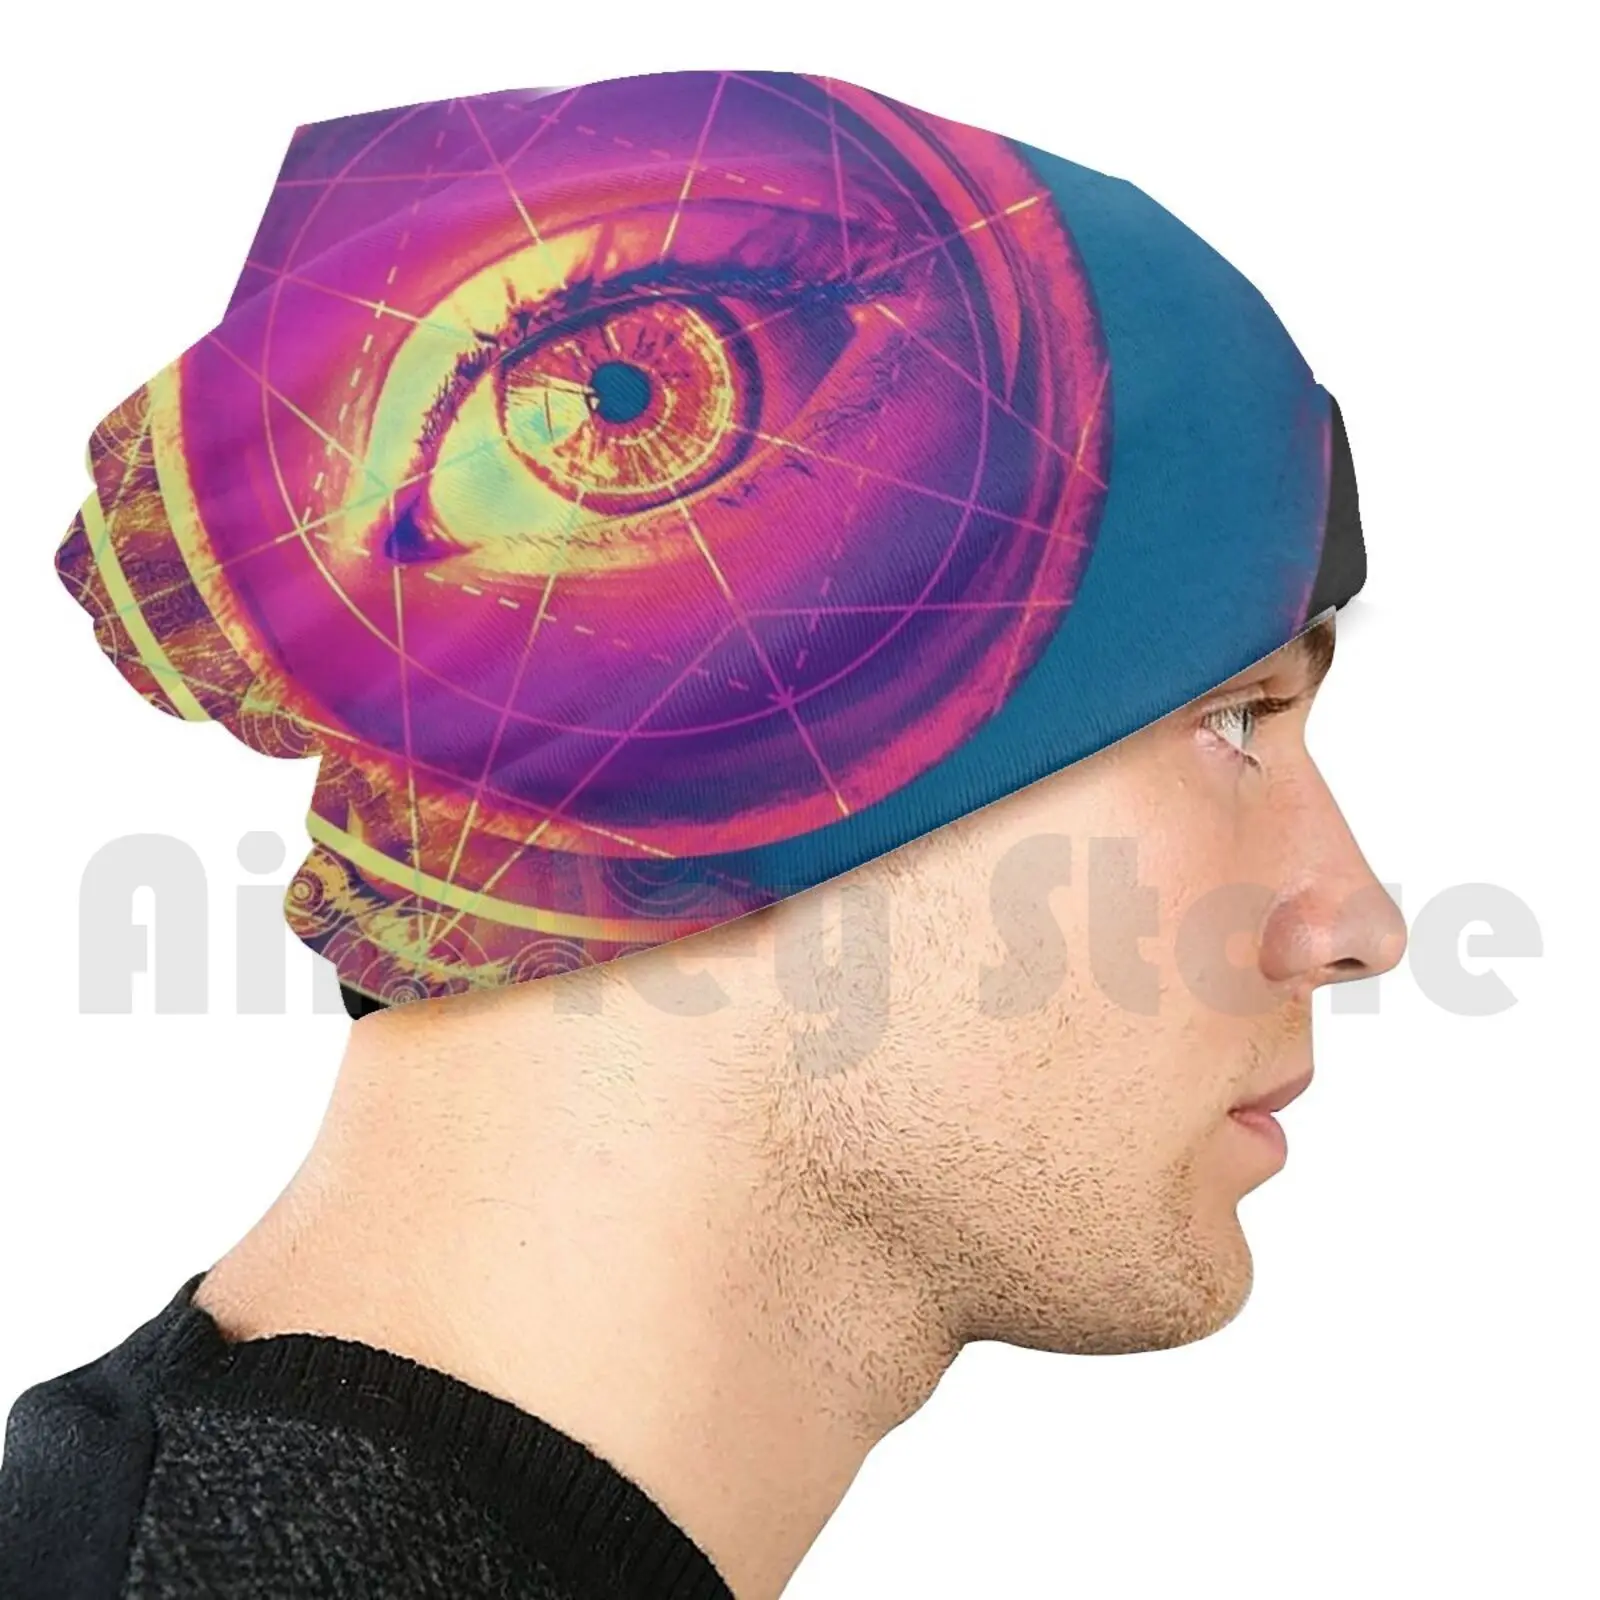 

Психоделические шапки для глаз Ayahuasca, пуловер, Удобная шапка, психоделическая Аяуаска для глаз, лекарства, религиозный абстрактный вид